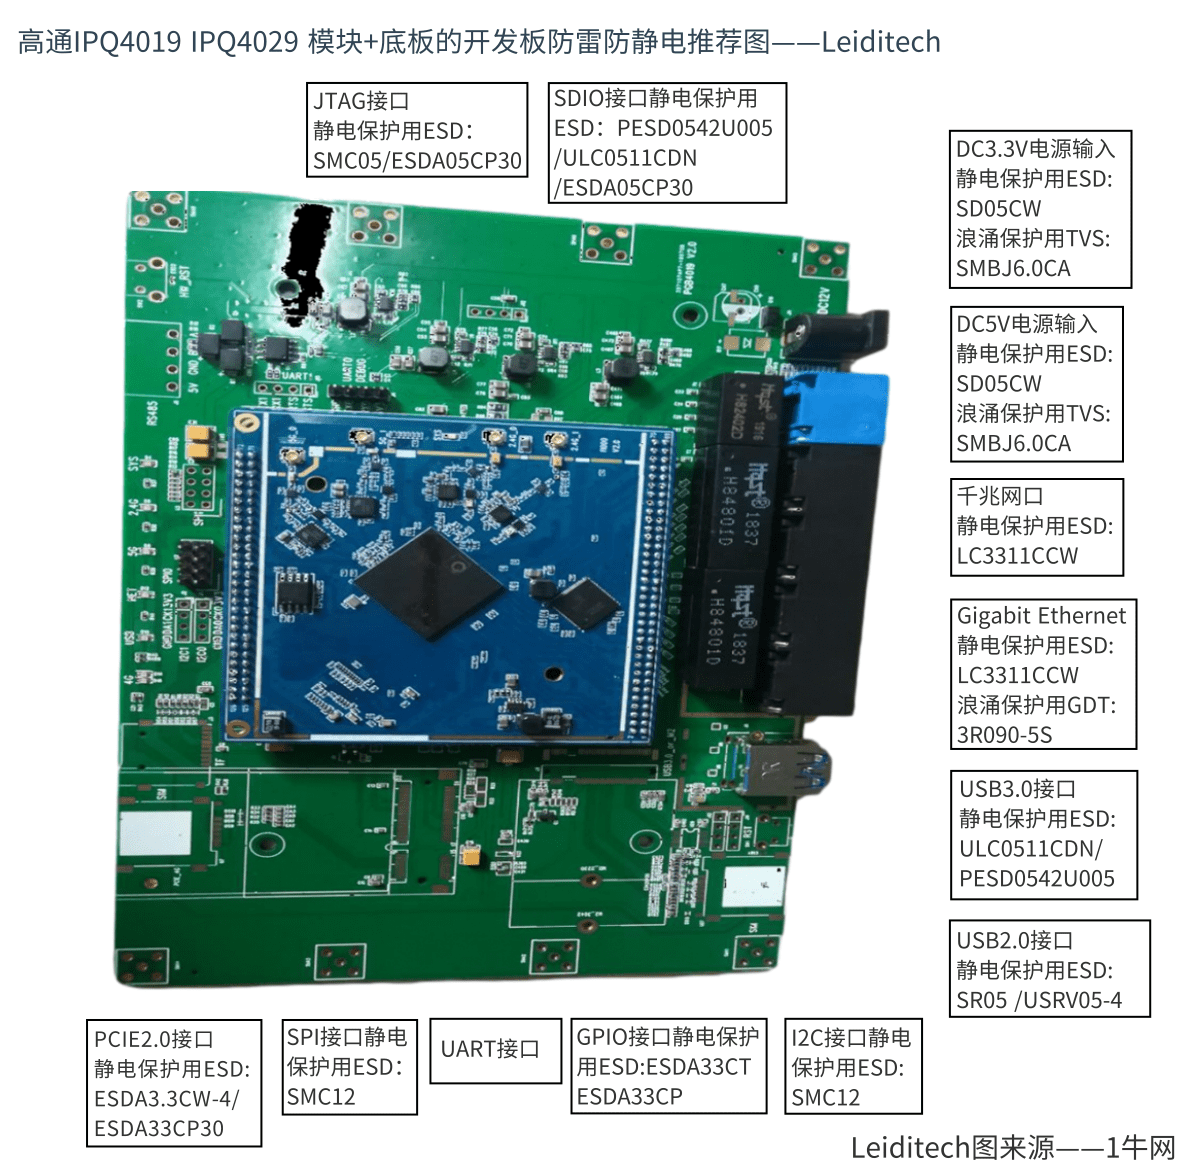 AC无线路由模块开发板介绍 高通IPQ4019 IPQ4029 模块+底板双频